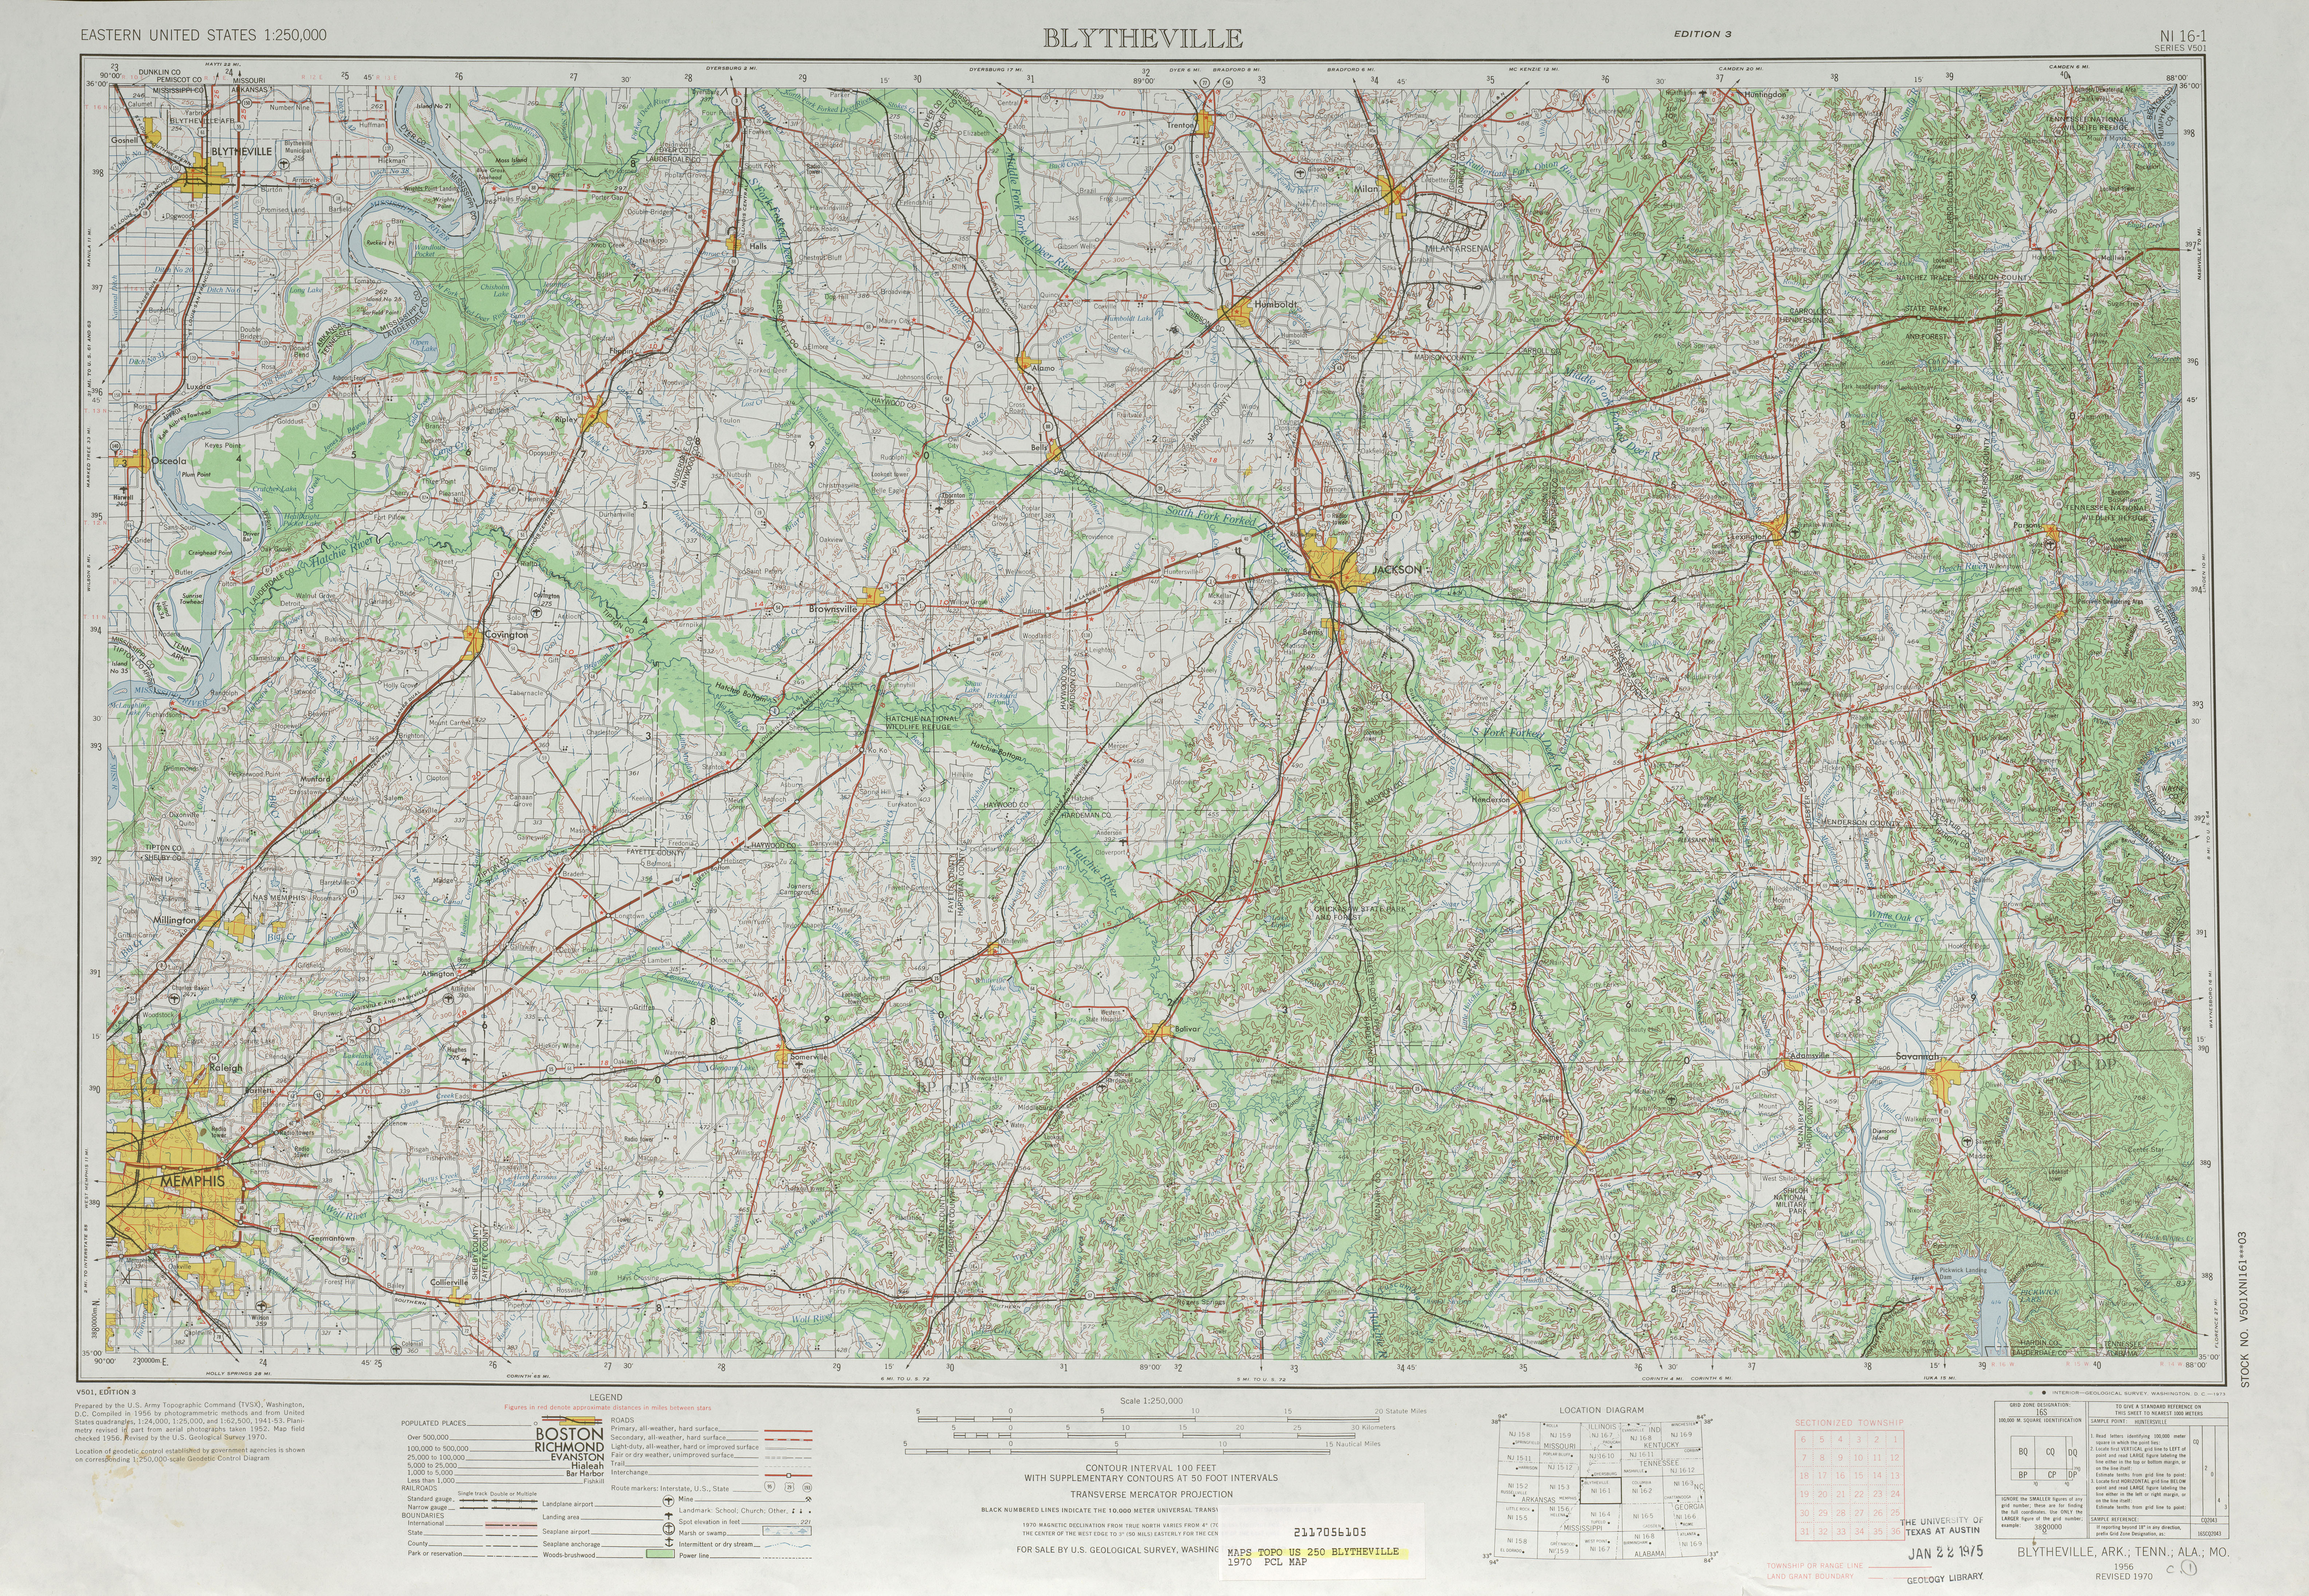 Hoja Blytheville del Mapa Topográfico de los Estados Unidos 1970